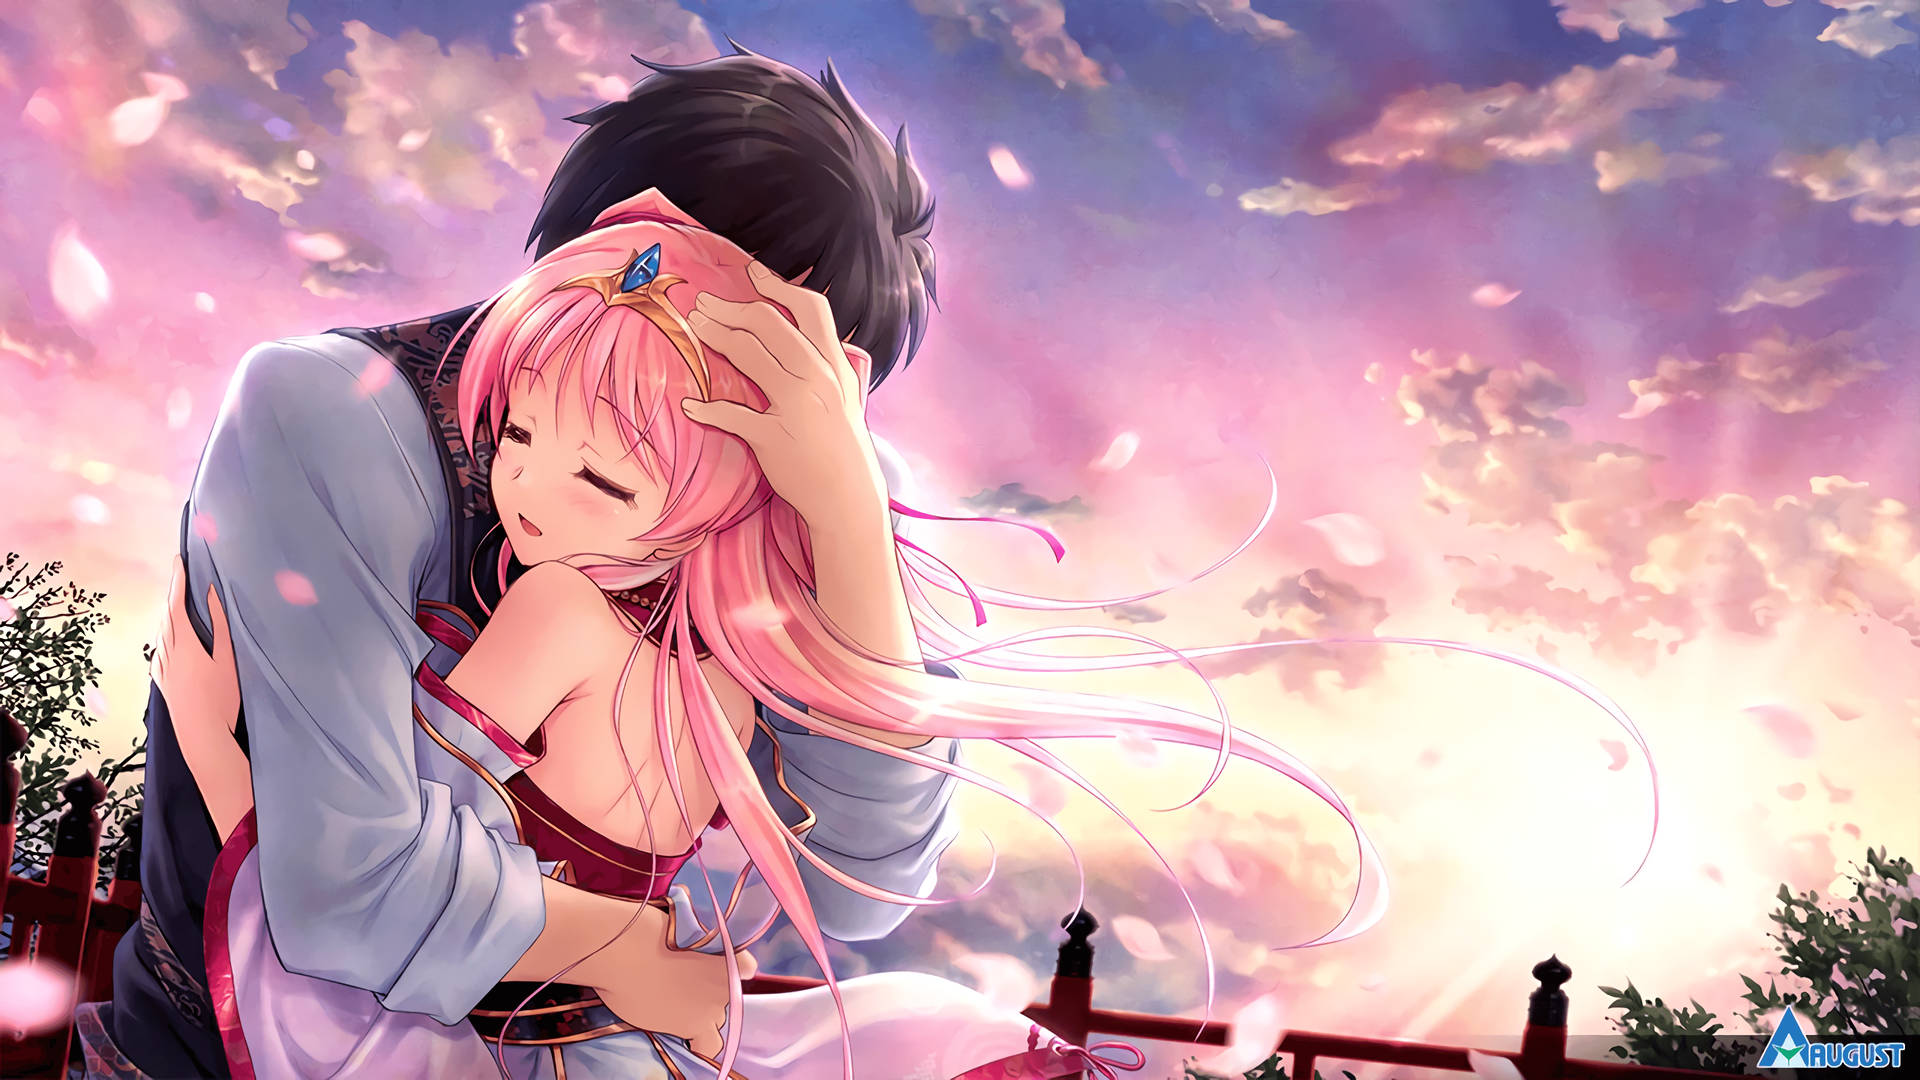 Anime Couple Hug Pink Sky Wallpaper